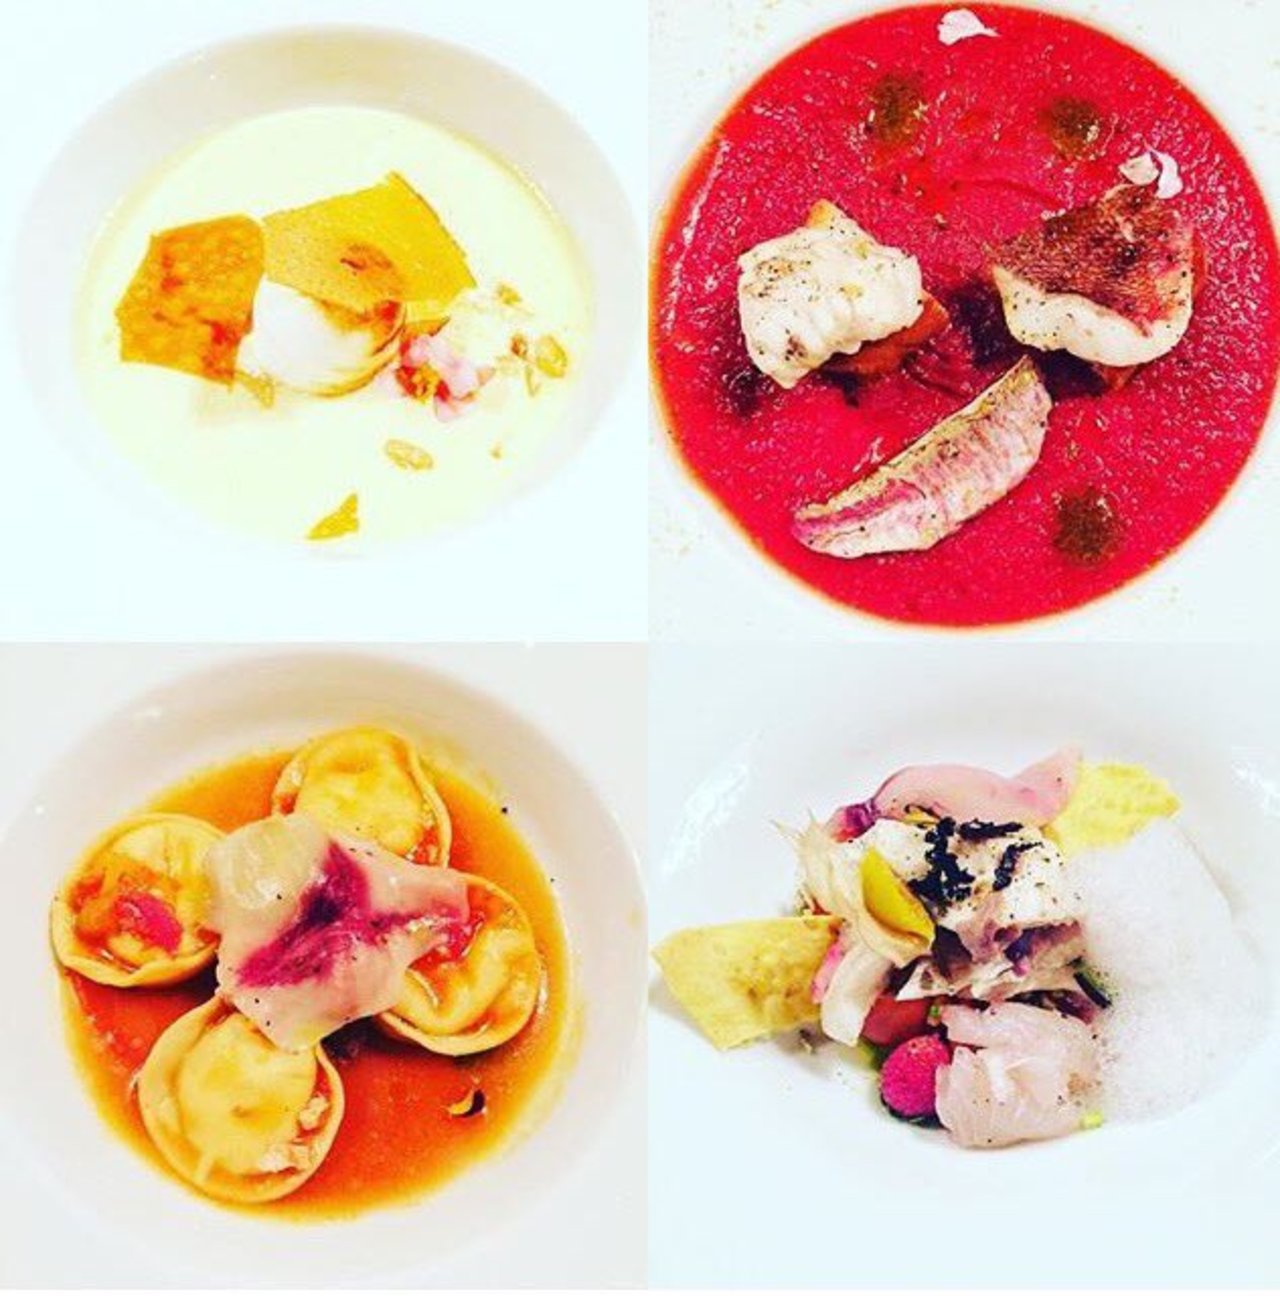 Grazie a @detectivemills per il bellissimo scatto...#ristoranteilsale #tuscany #sanvincenzo #chefdaddi https://t.co/rotJTxBBWn